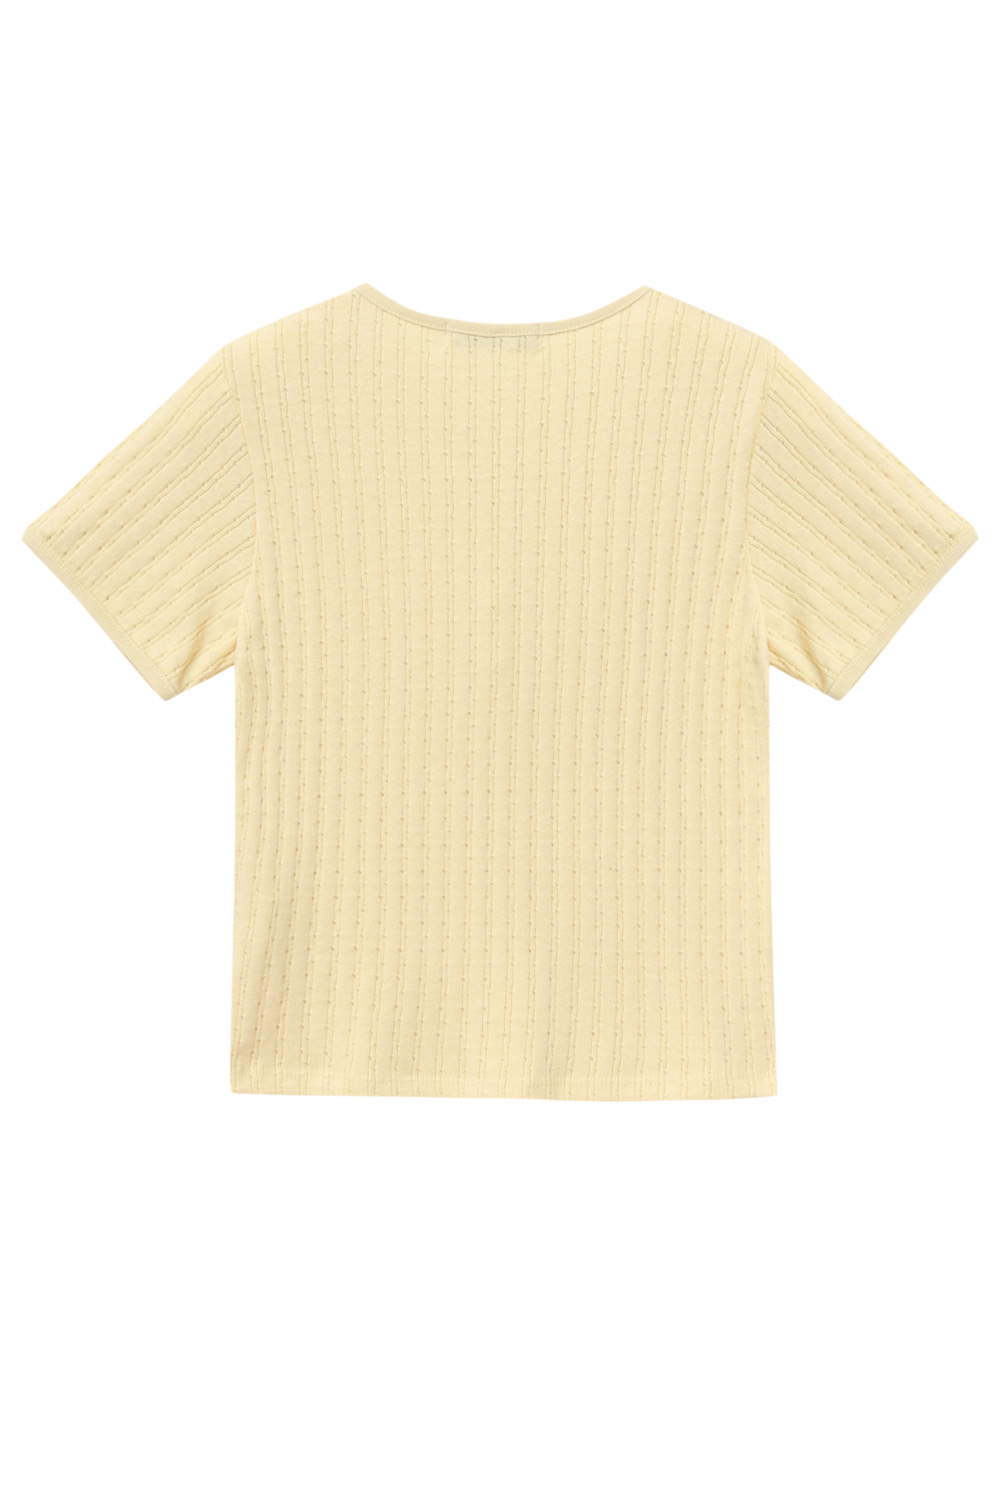 Clover Cotton T-shirt (Yellow)